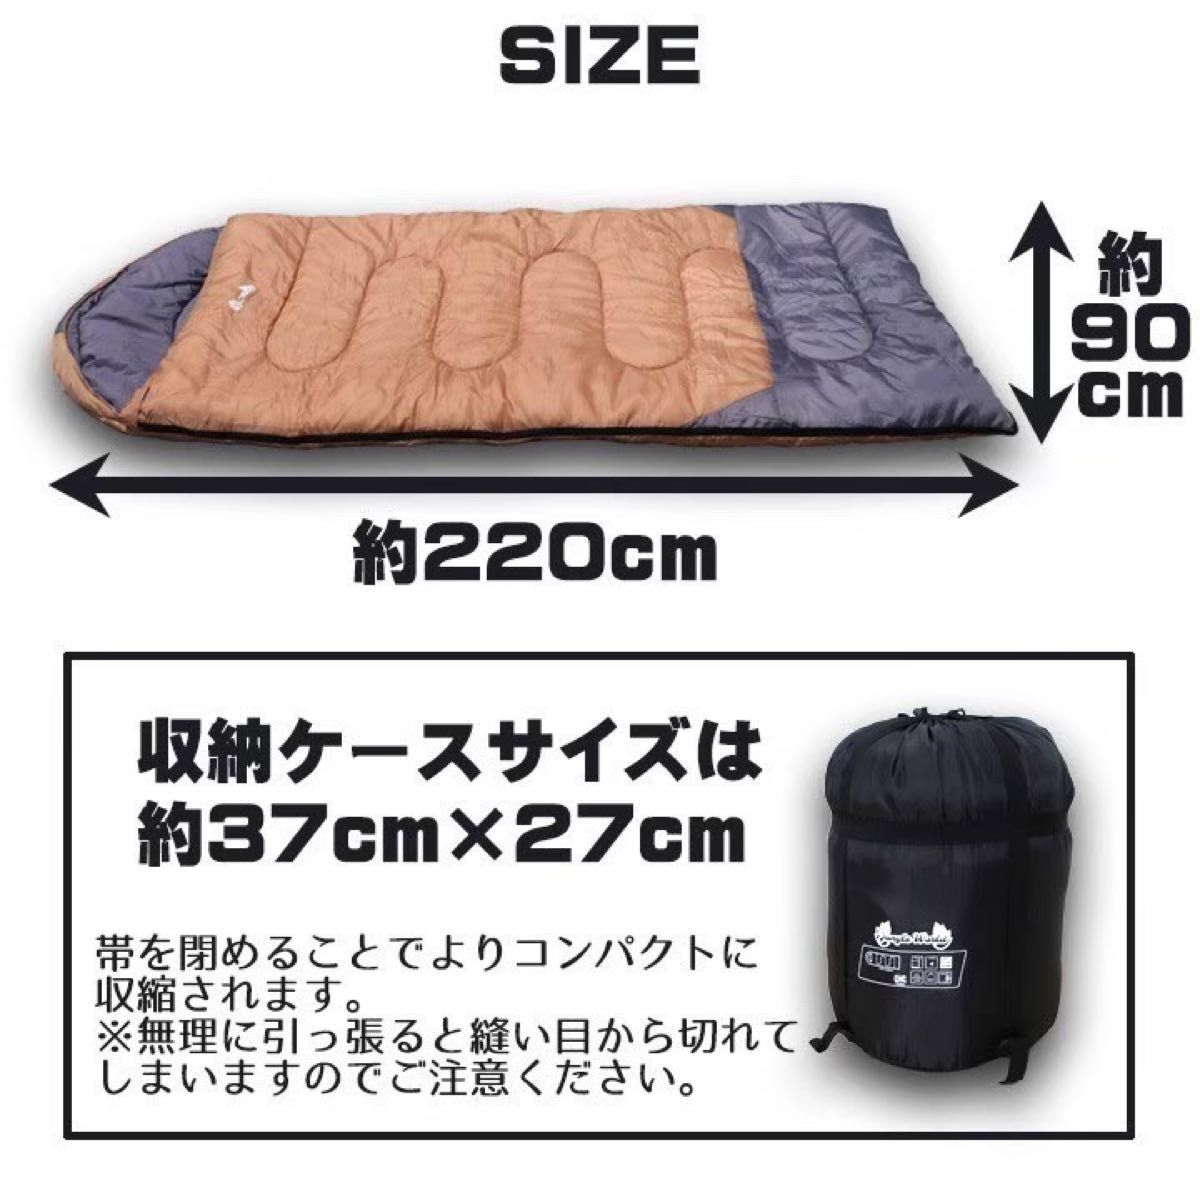 即購入大歓迎！早い者勝ち！寝袋−10℃ 人工ダウンワイド キャンプ 登山用品